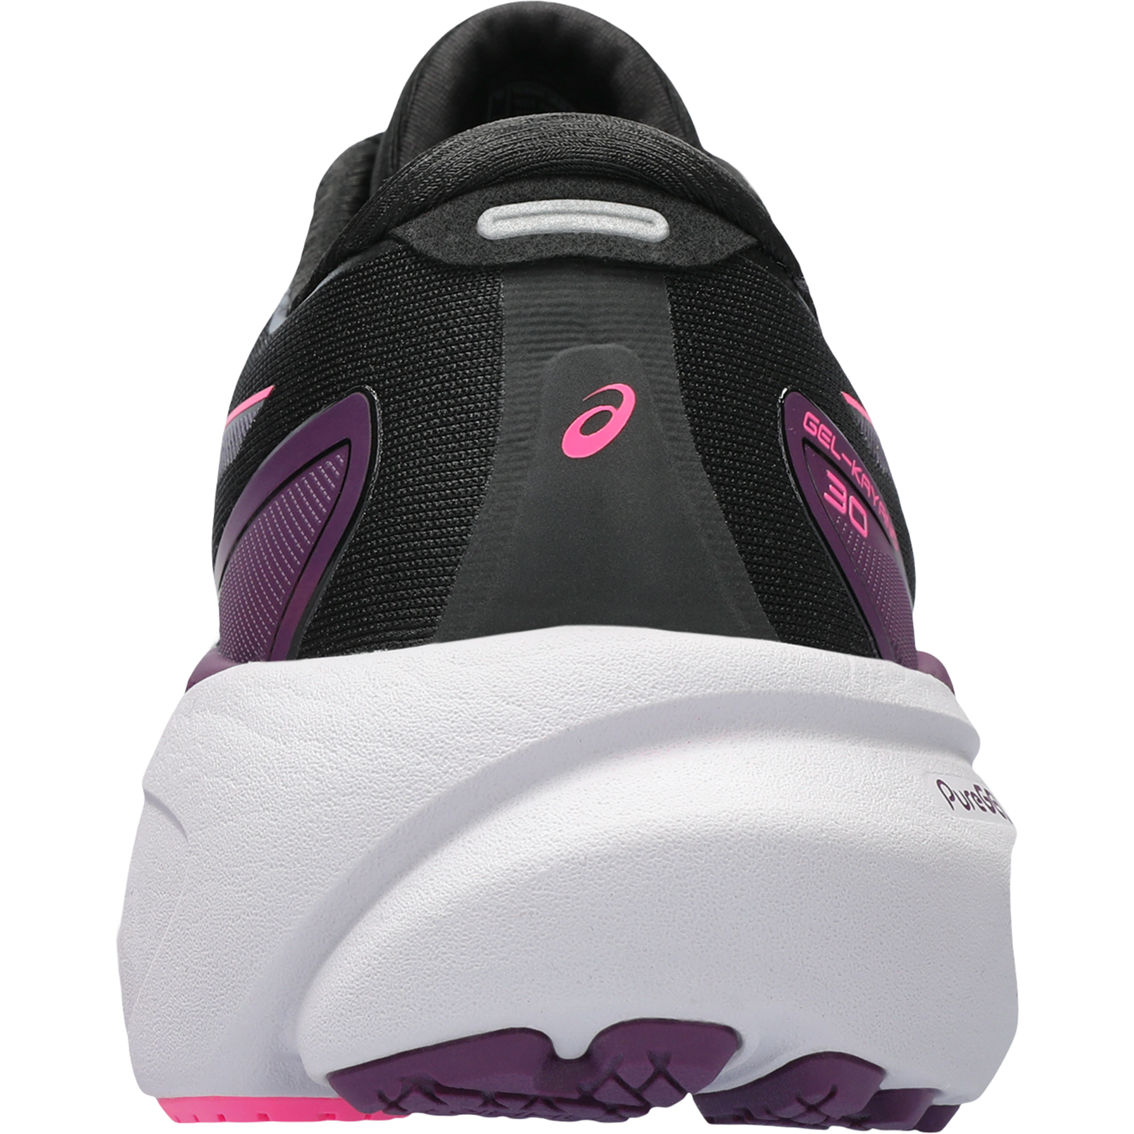 ASICS Women's Gel Kayano 30 Running Shoes - Image 6 of 6